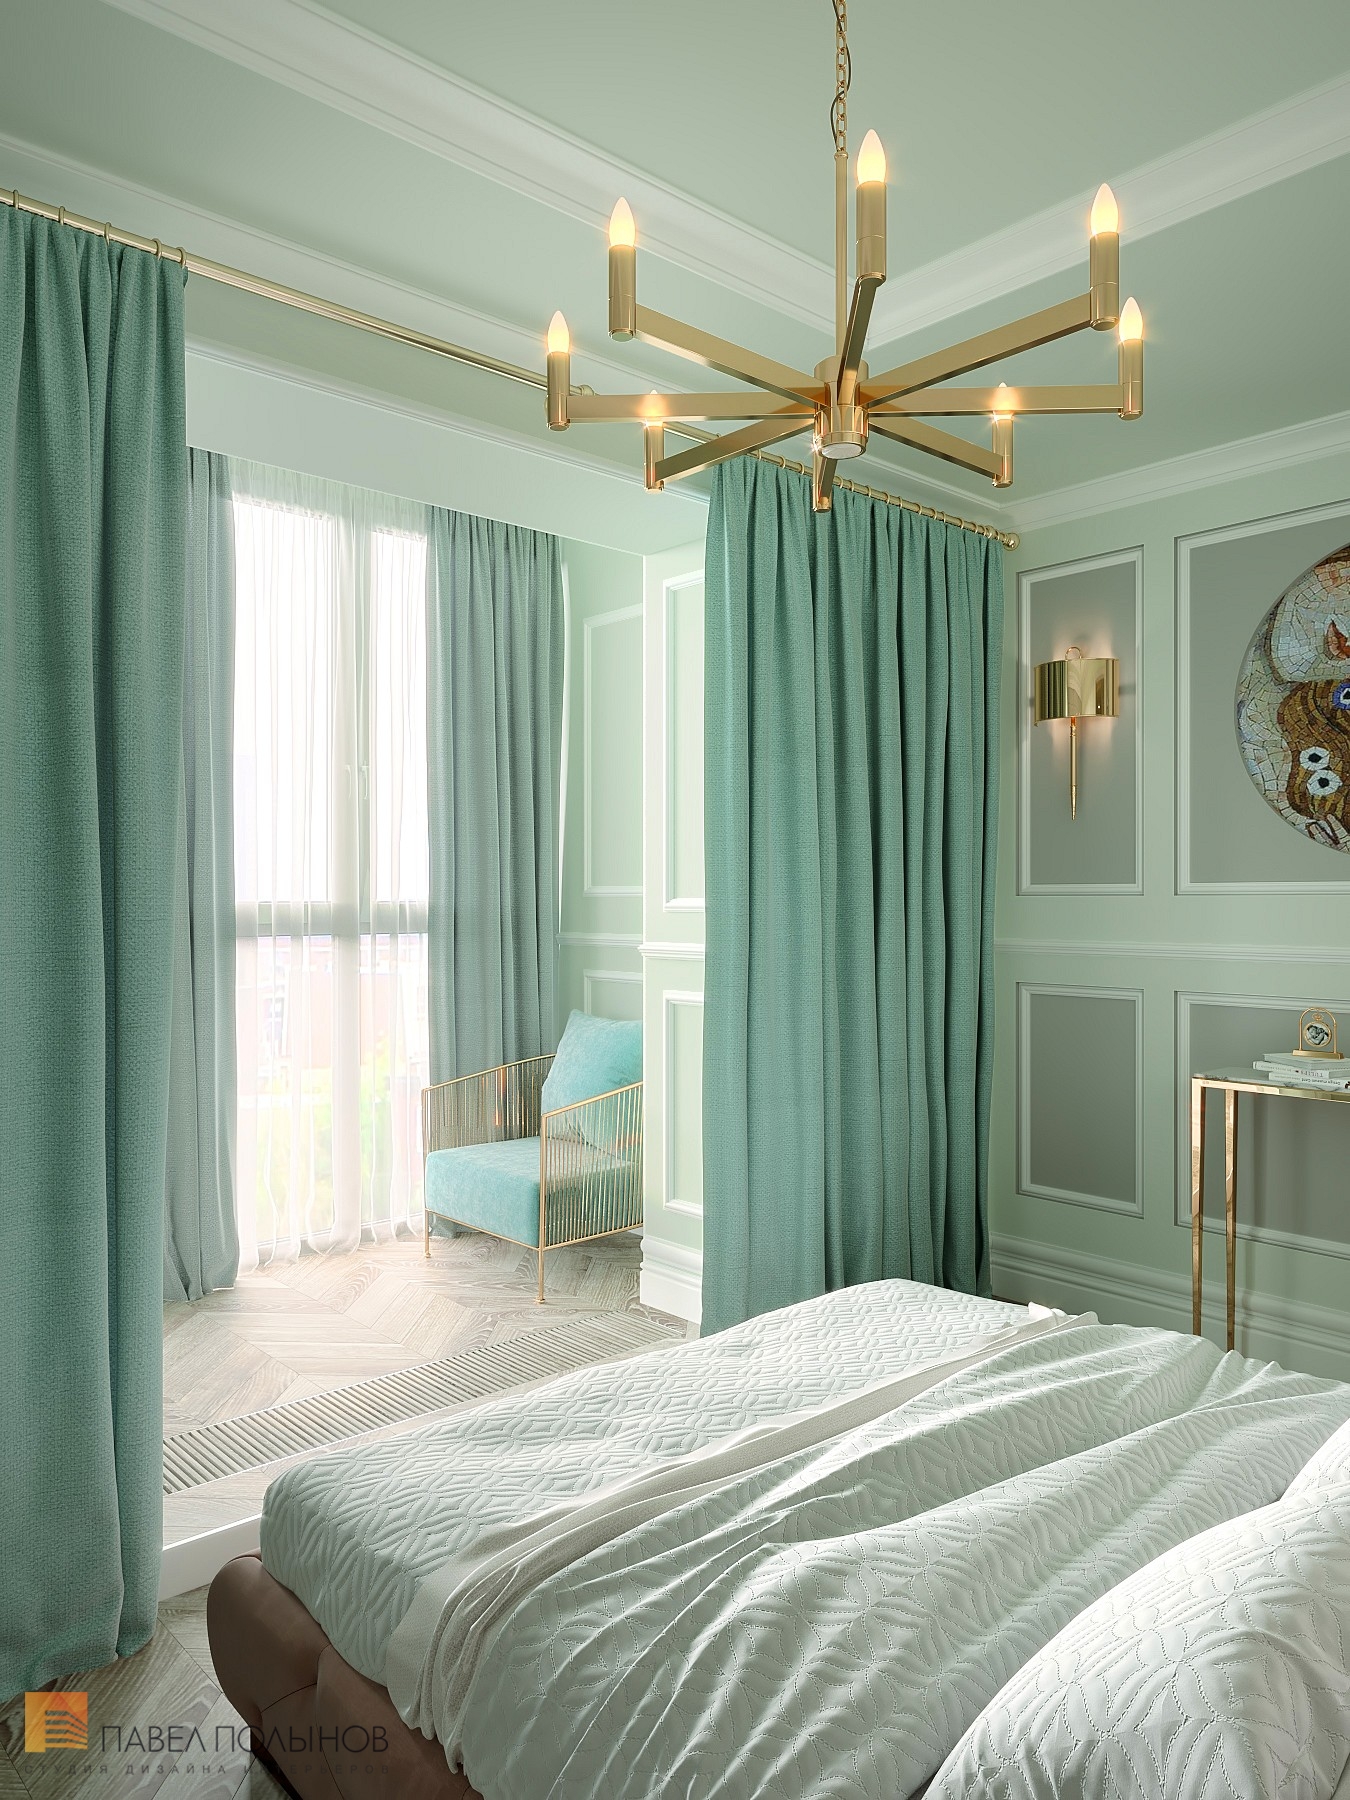 Фото дизайн спальни из проекта «Интерьер квартиры в стиле неоклассика в ЖК «The Residence», 219 кв.м.»